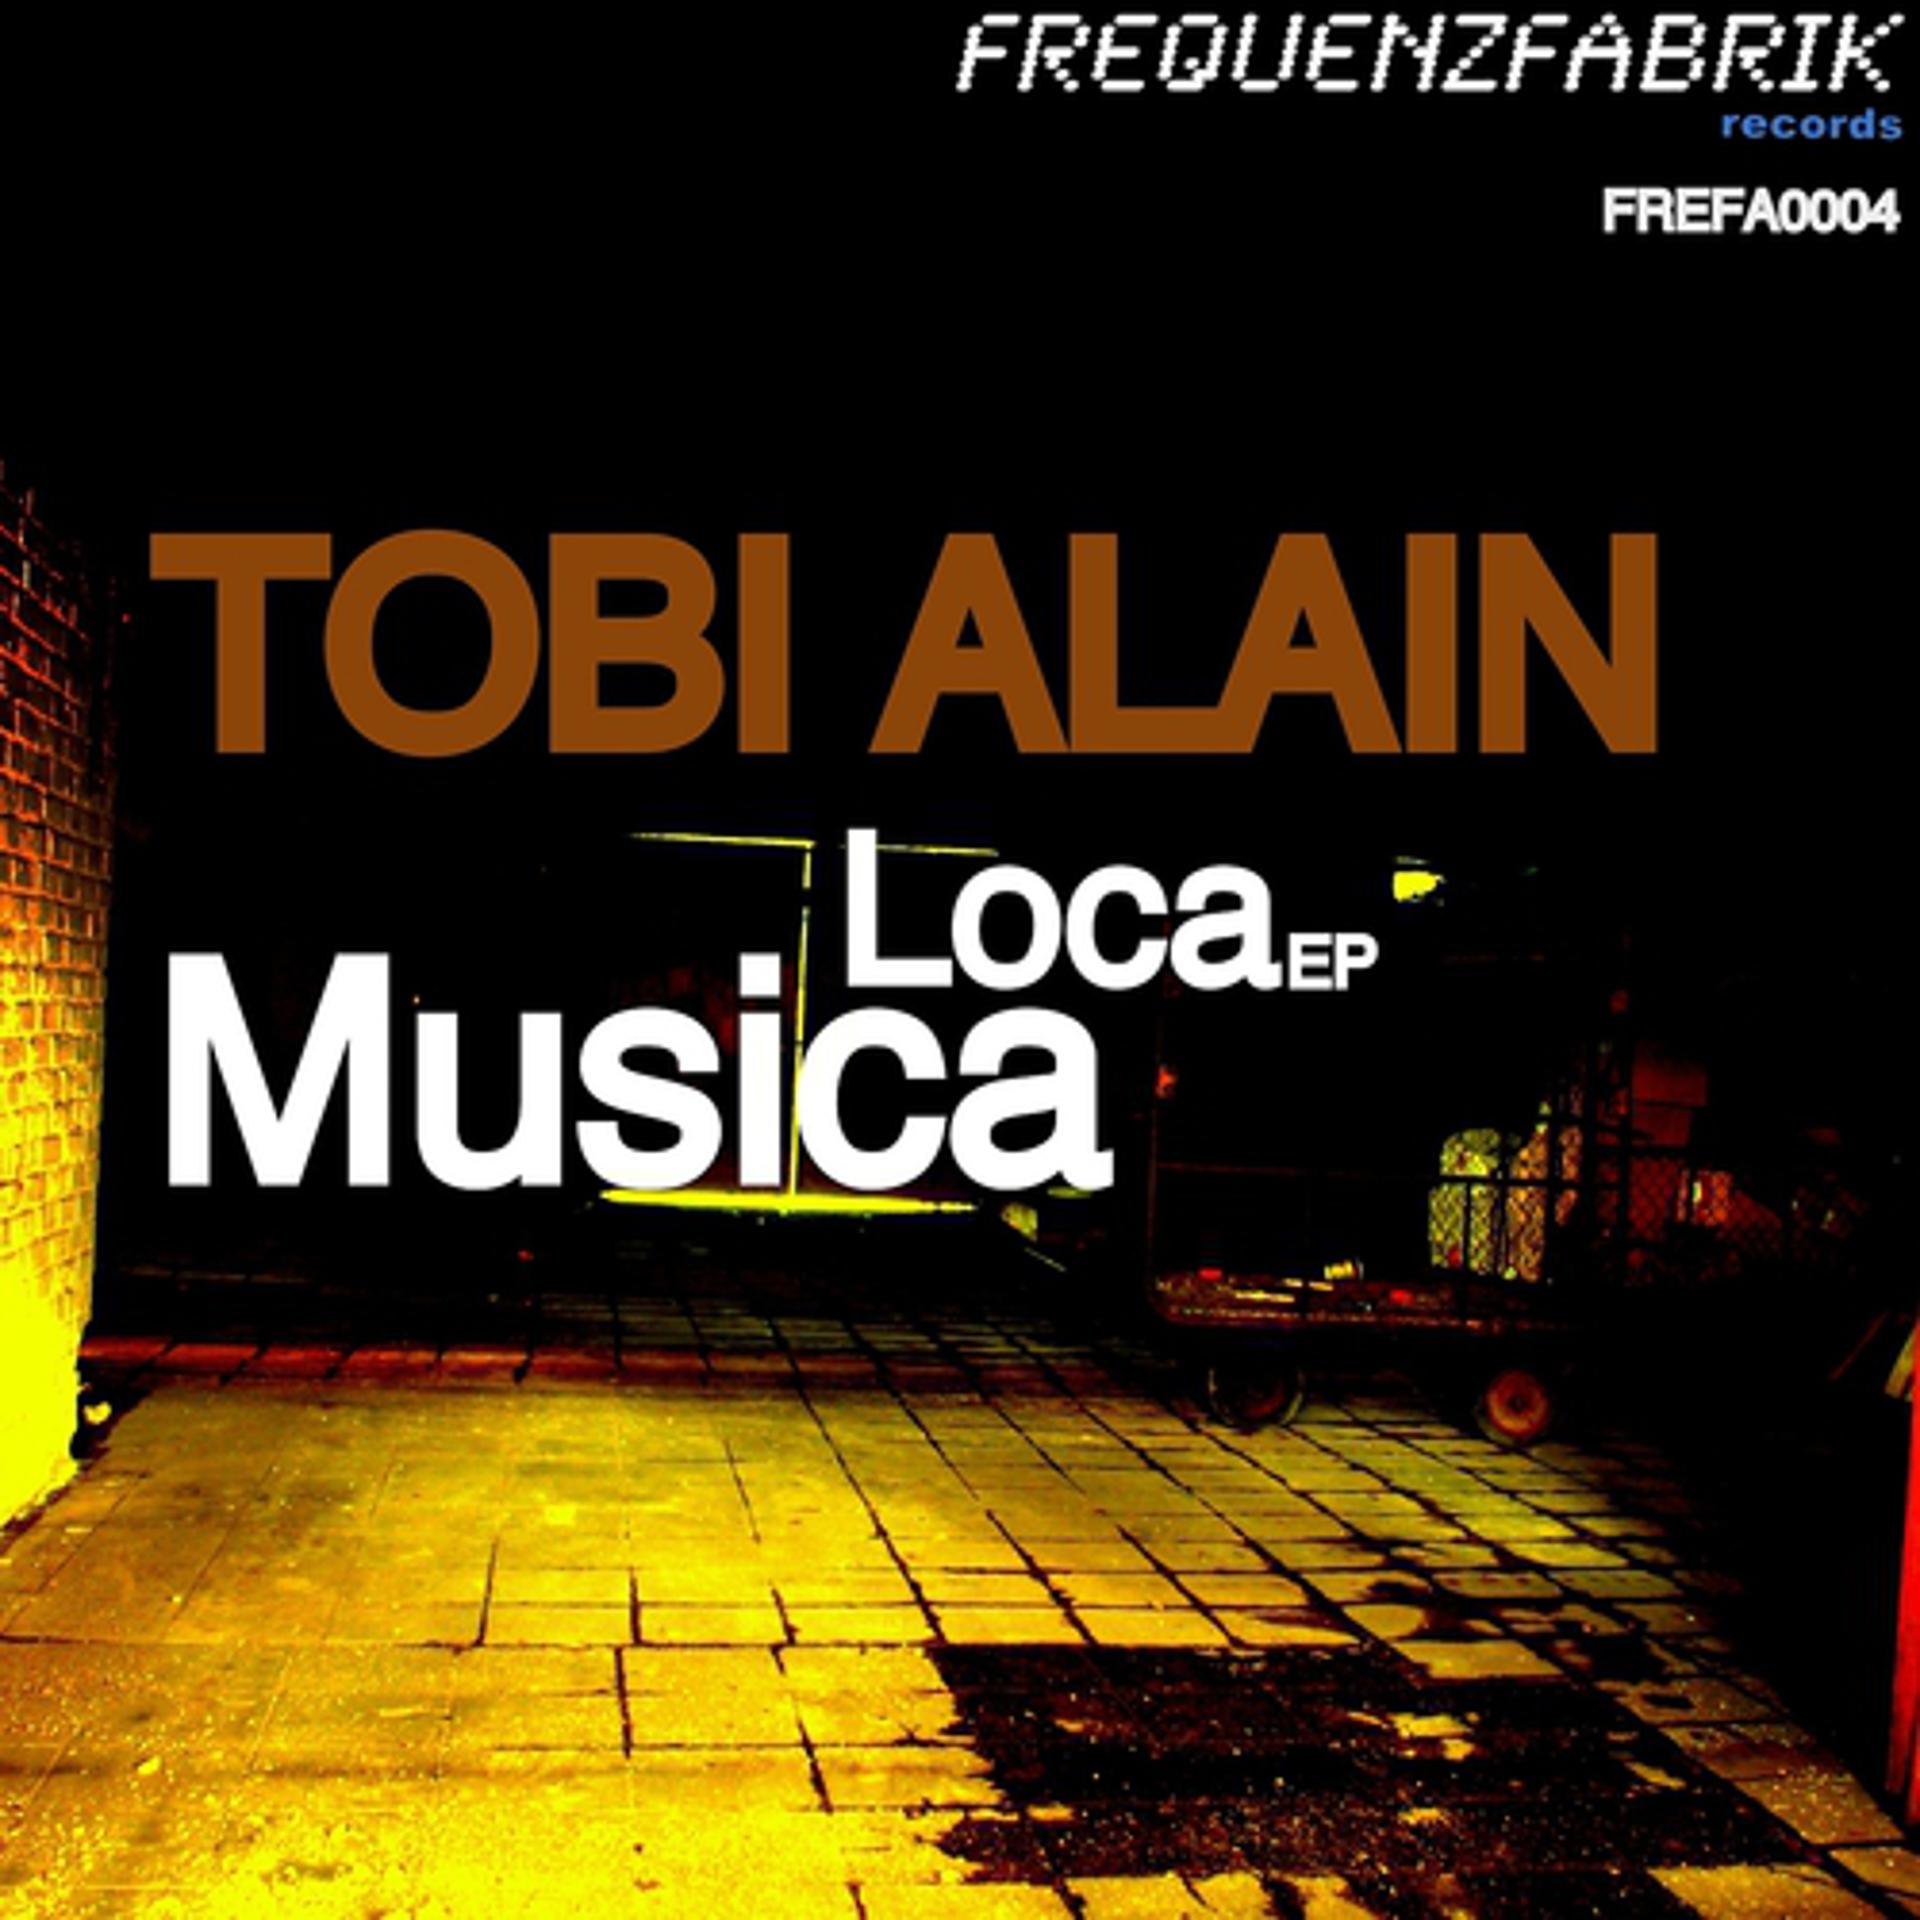 Постер альбома Musica Loca Ep